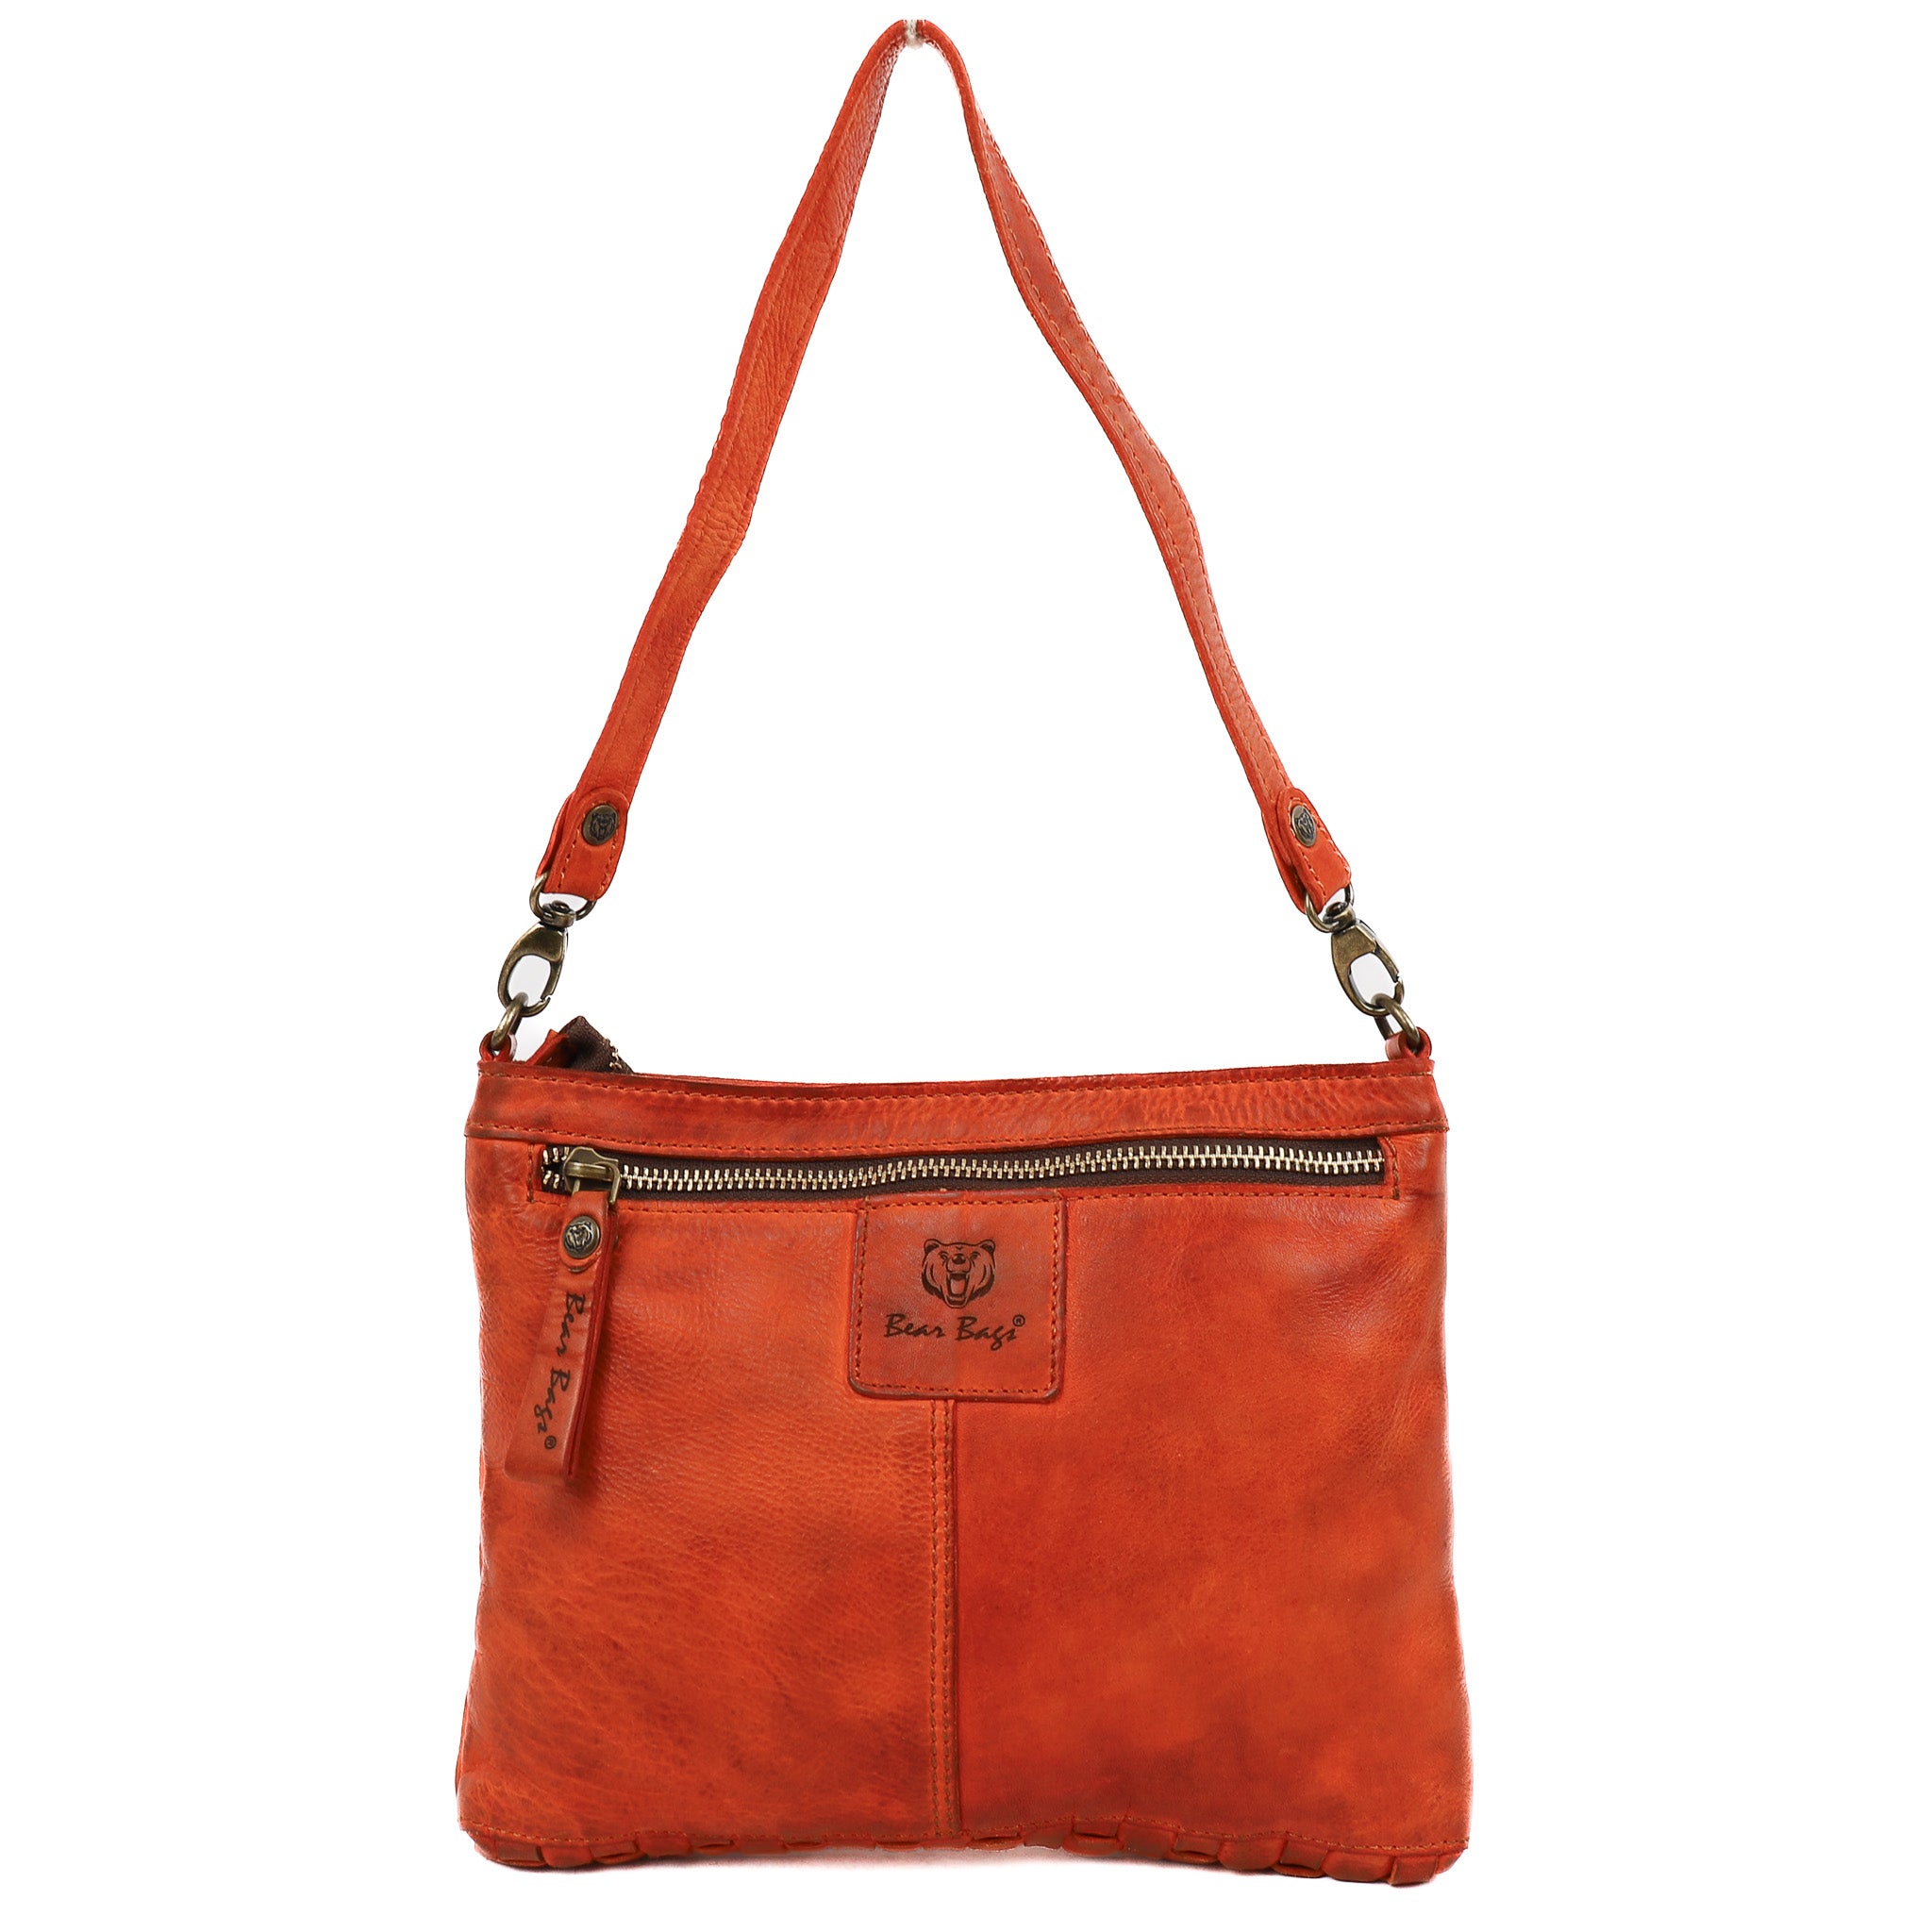 Braided shoulder bag orange - GR 5260